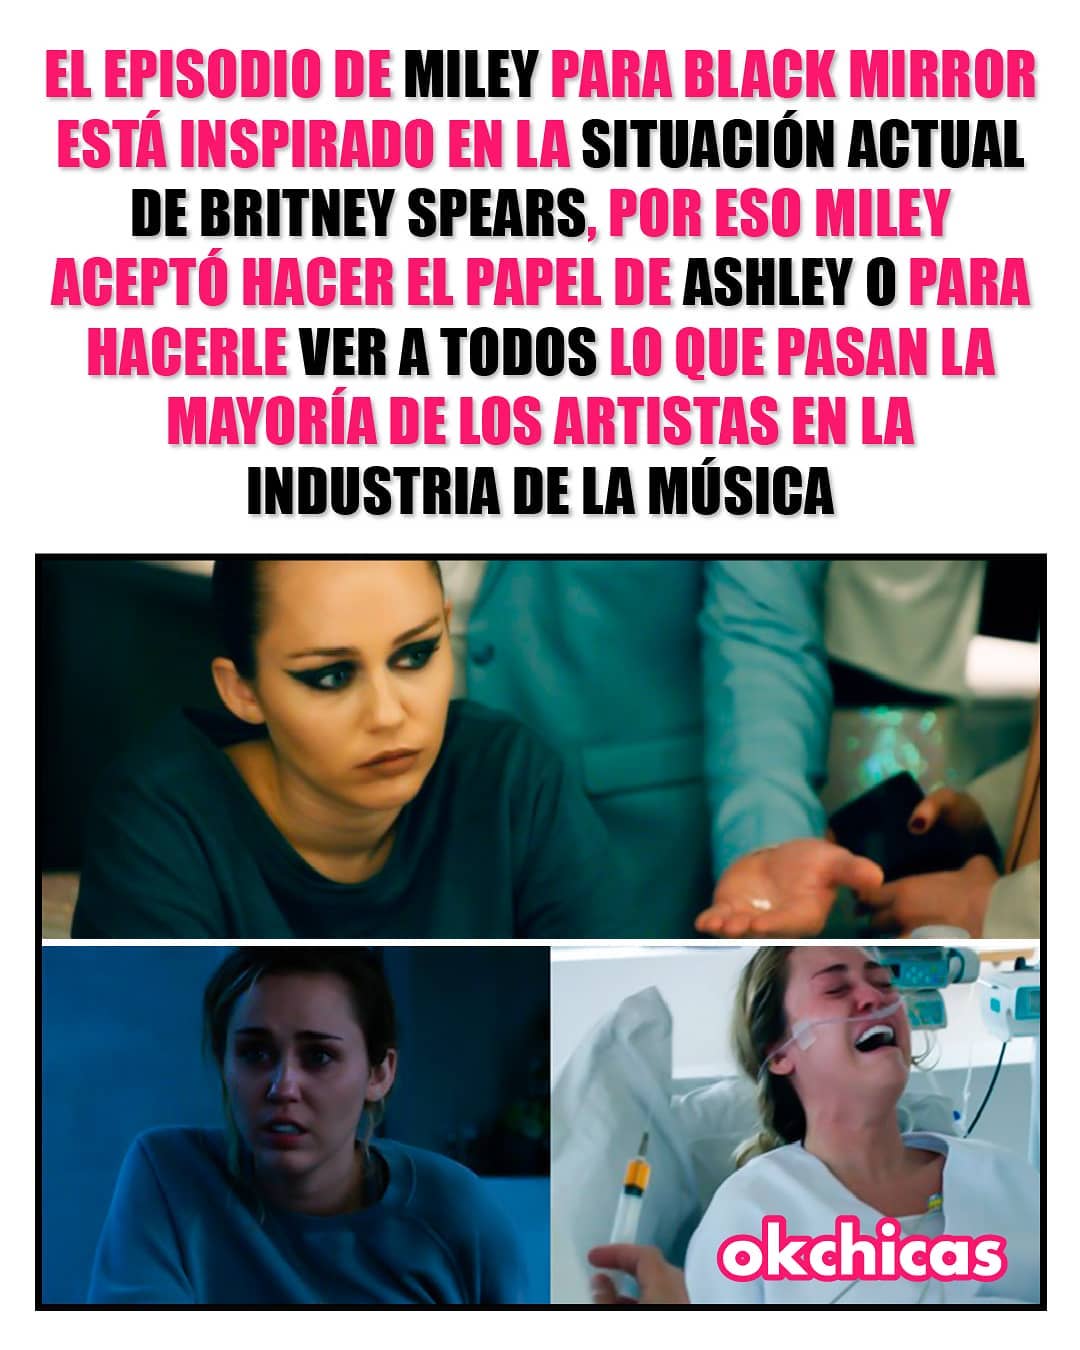 El episodio de Miley para Black Mirror está inspirado en la situación actual de Britney Spears, por eso Miley aceptó hacer el papel de Ashley o para hacerle ver a todos lo que se pasan los artistas en la industria de la música.